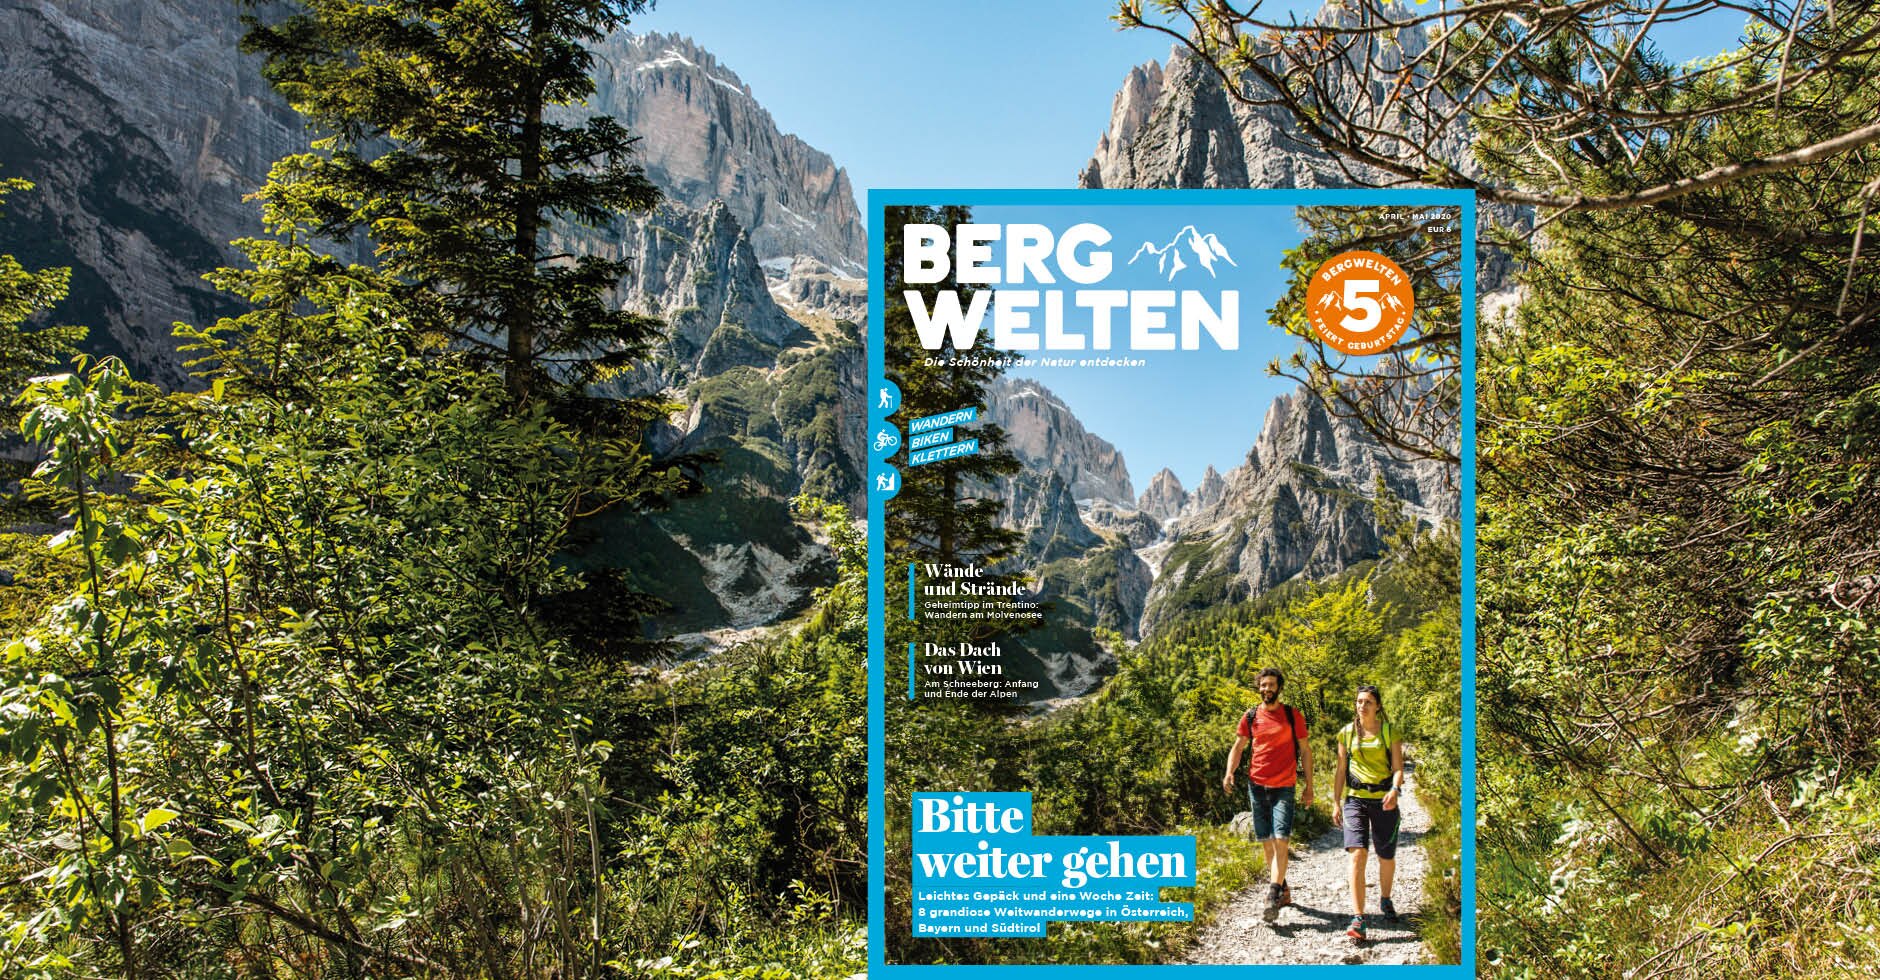 Das Bergwelten Magazin (Ausgabe April/Mai 2020)